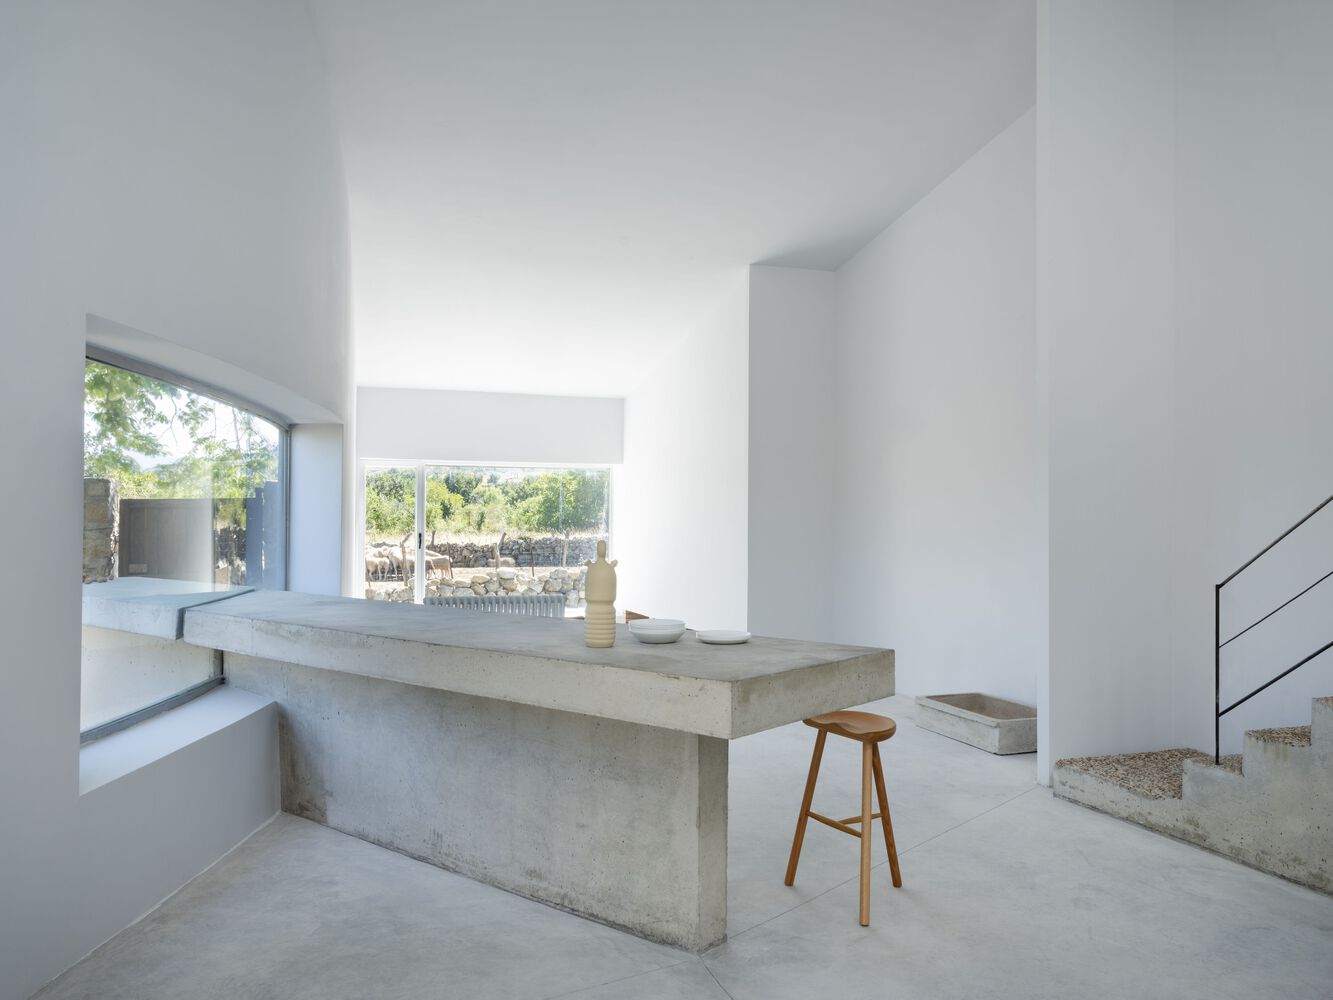 Raúl Almenara,西班牙,住宅設計,國外住宅設計案例,極簡風格,庭院住宅,獨棟住宅,140㎡,鄉村住宅設計